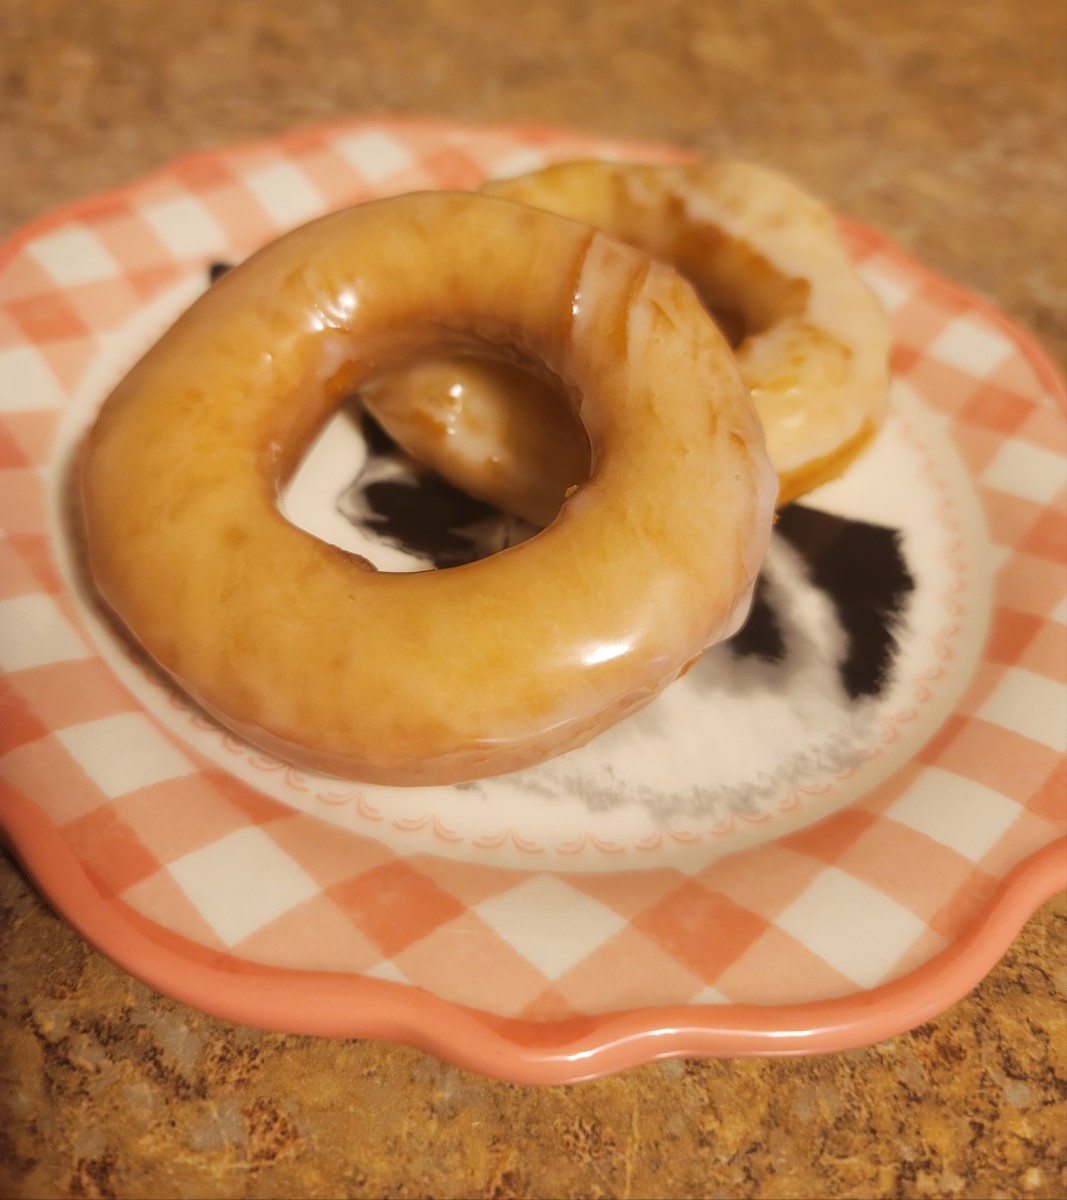 Homemade glazed donuts, yum!